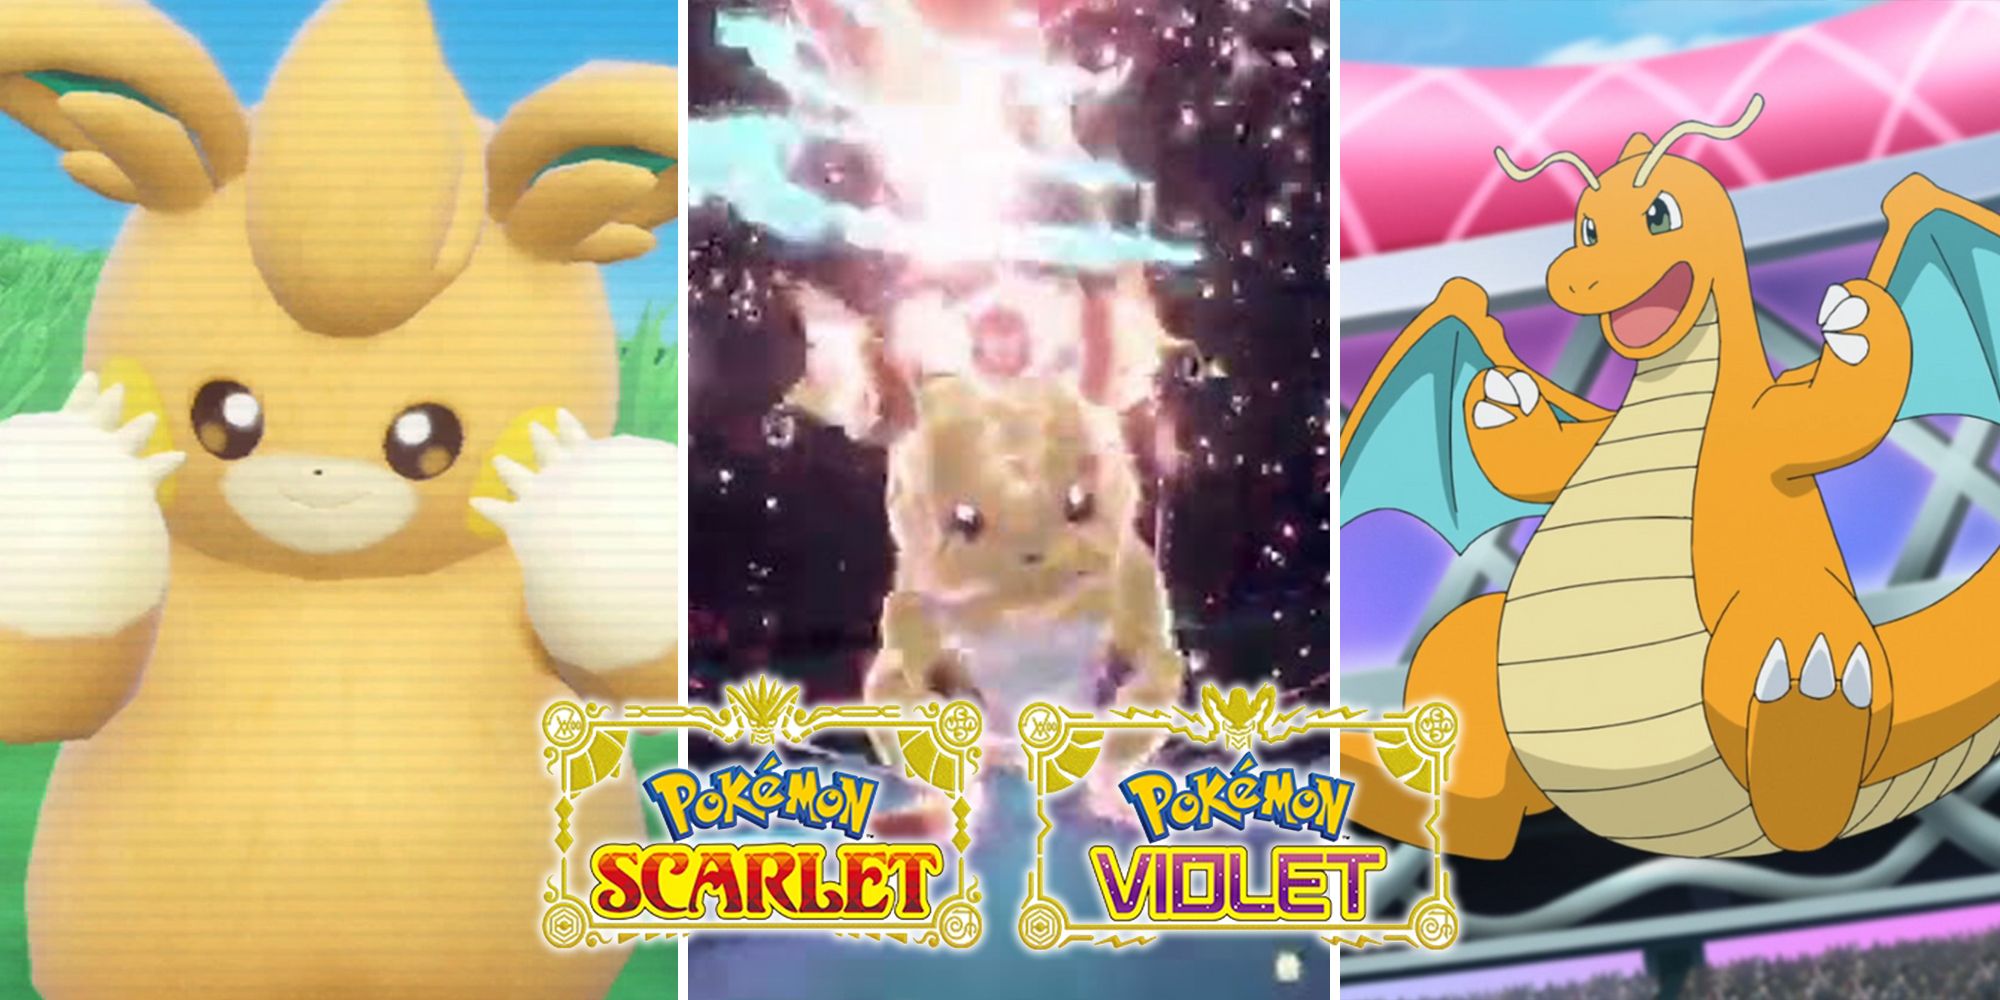 Pokémon Scarlet & Violet - Wild Tera Type Pokémon